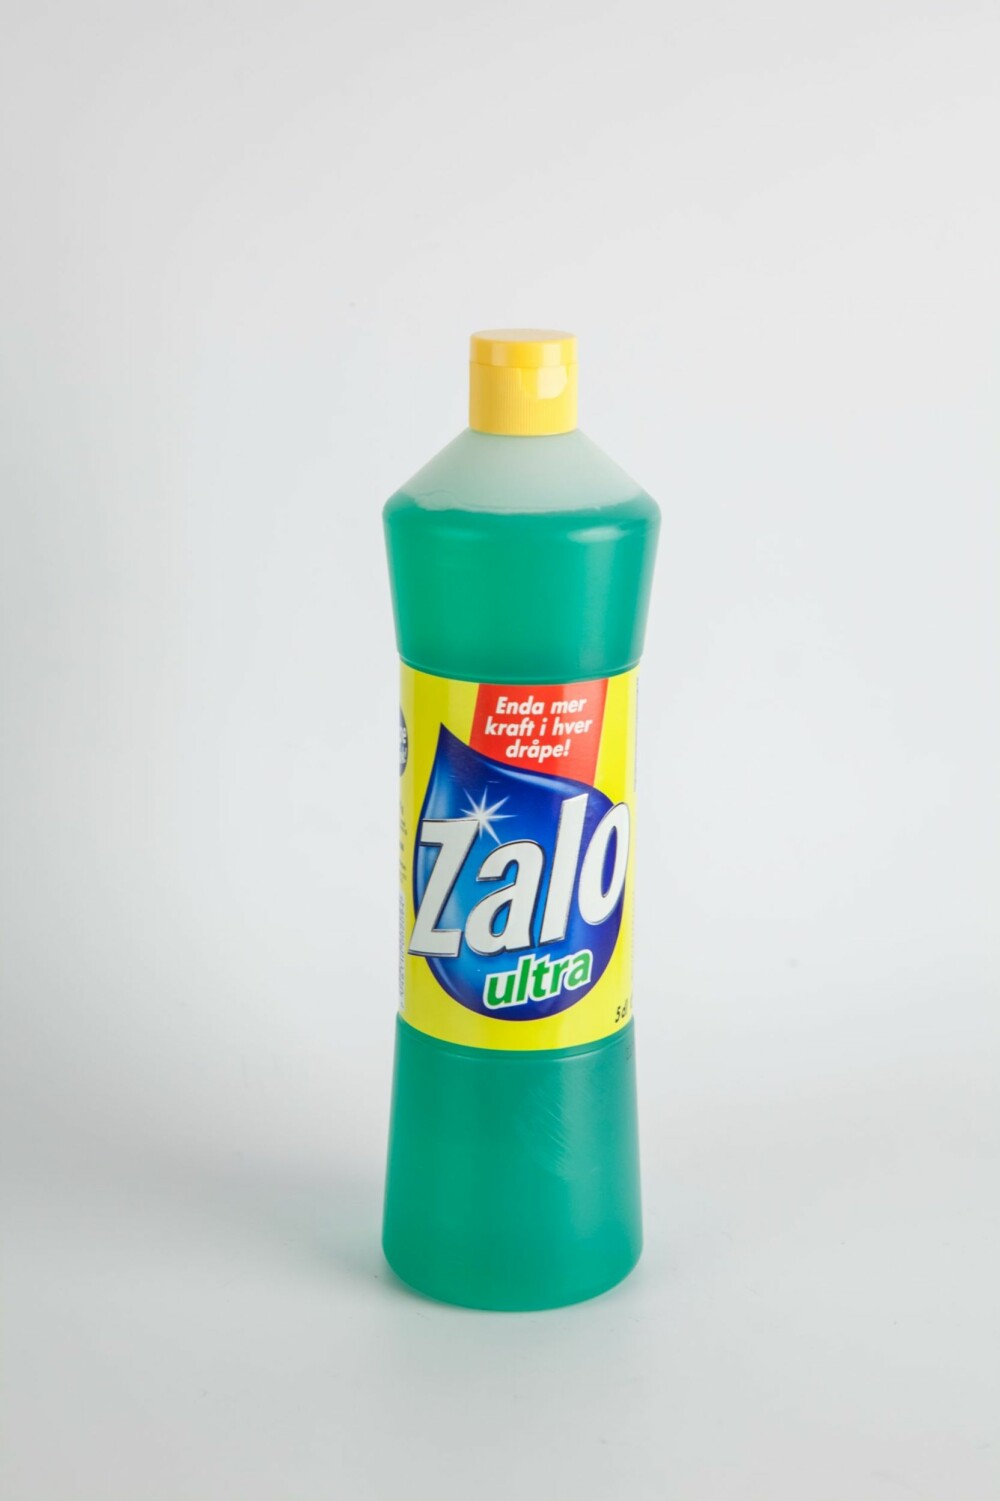 BEST I TEST: Per liter Zalo kan du vaske over 14000 tallerkner, fant testlaboratoriet ut.